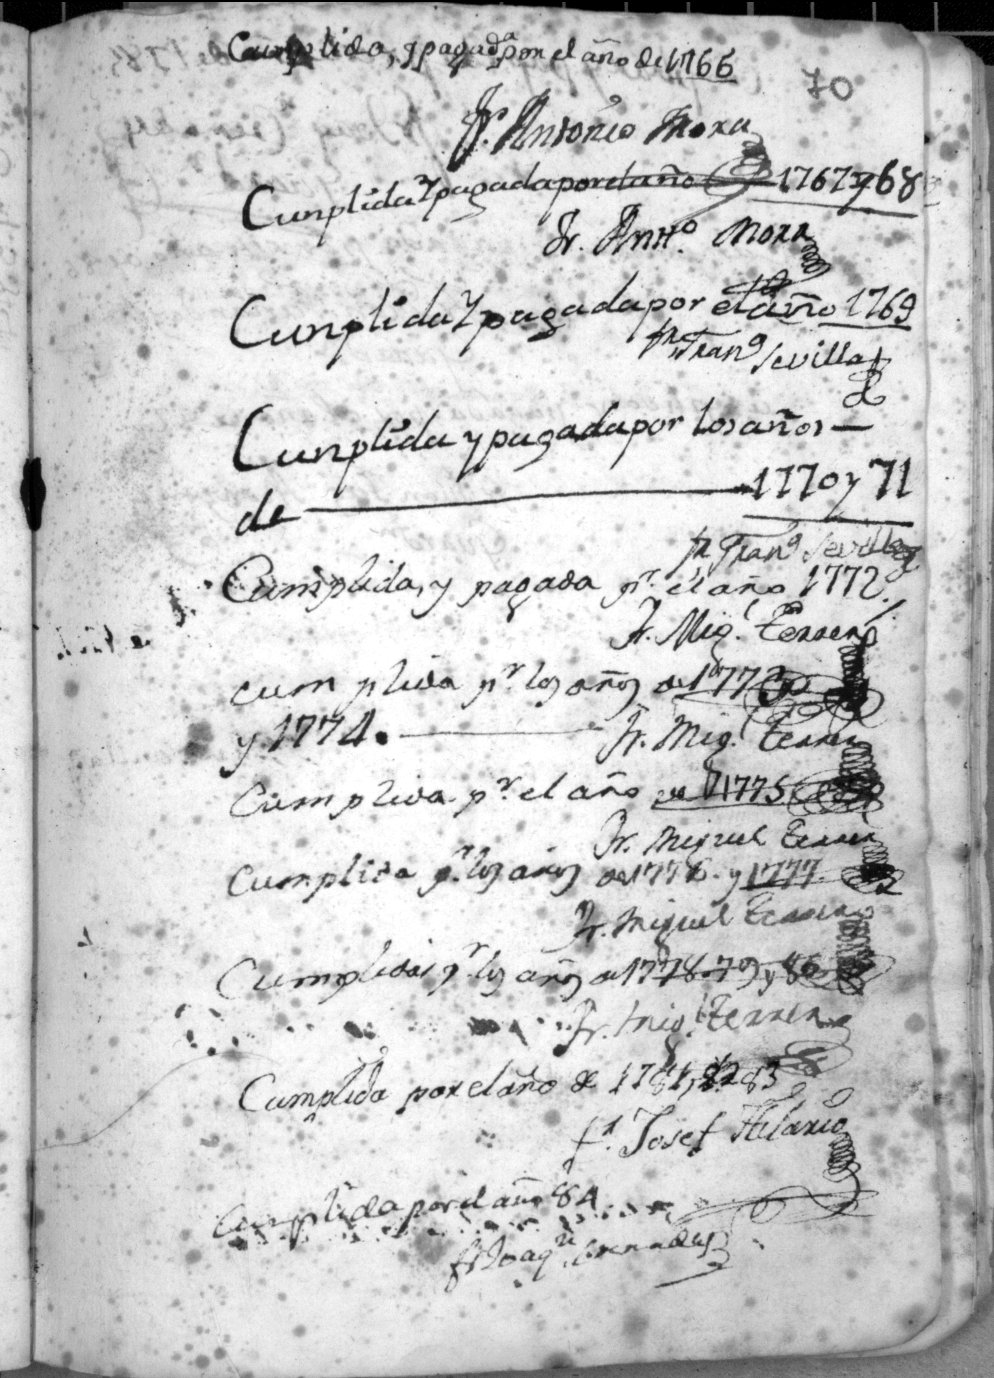 Registro de censos y pías memorias del Convento de San Francisco de Caravaca. Años 1713-1802.